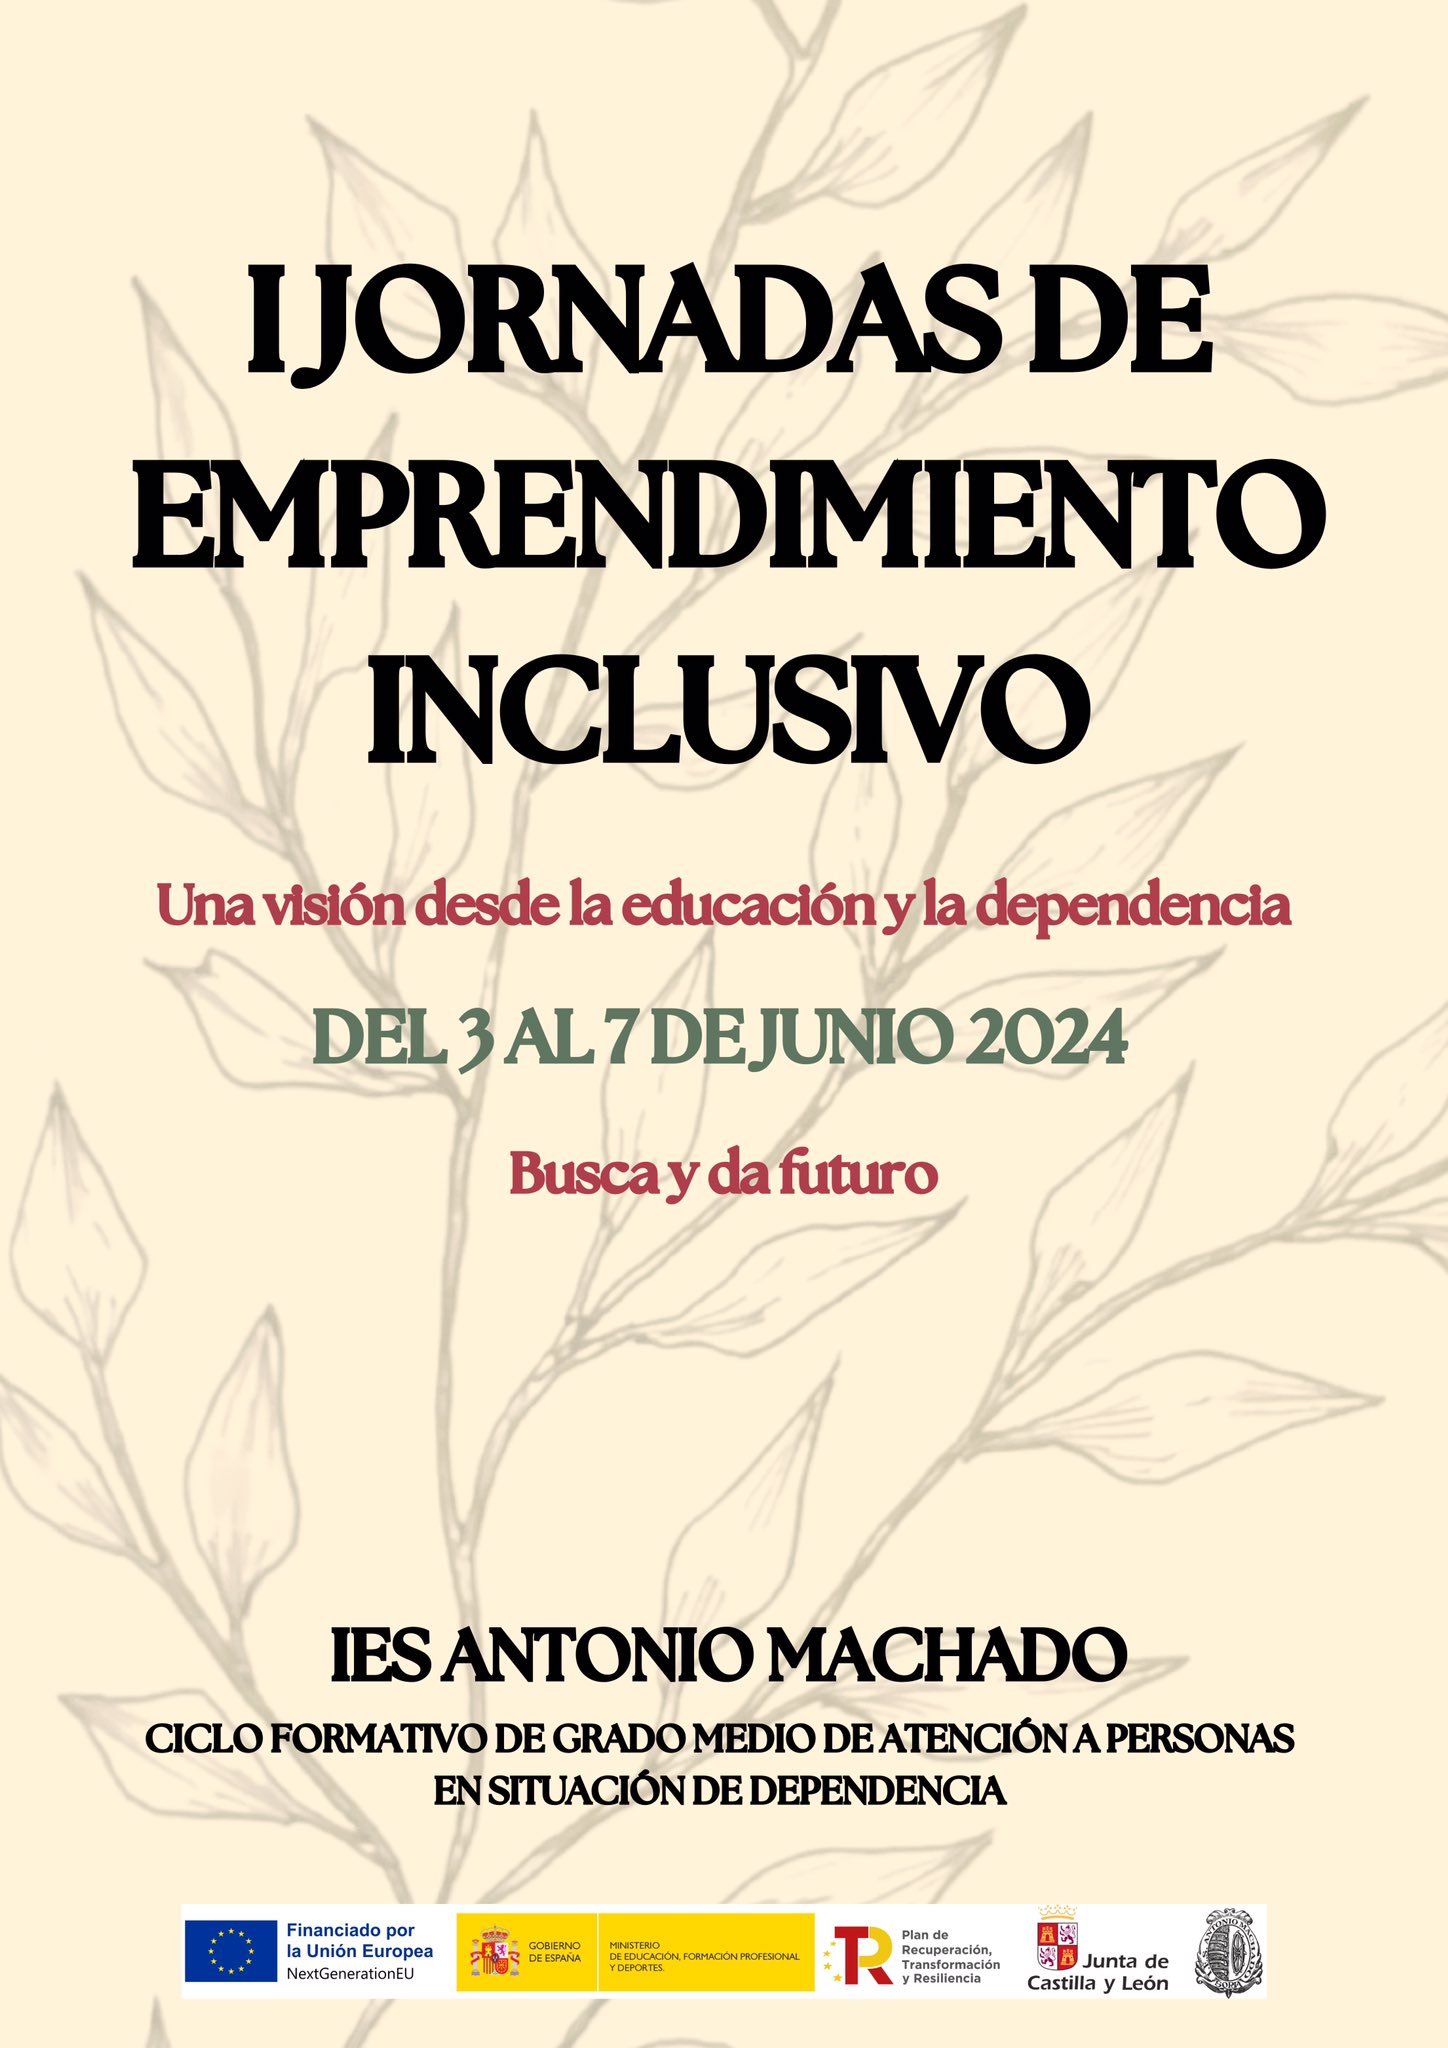 Cartel anunciador de las jornadas de emprendimiento inclusivo del IES Antonio Machado